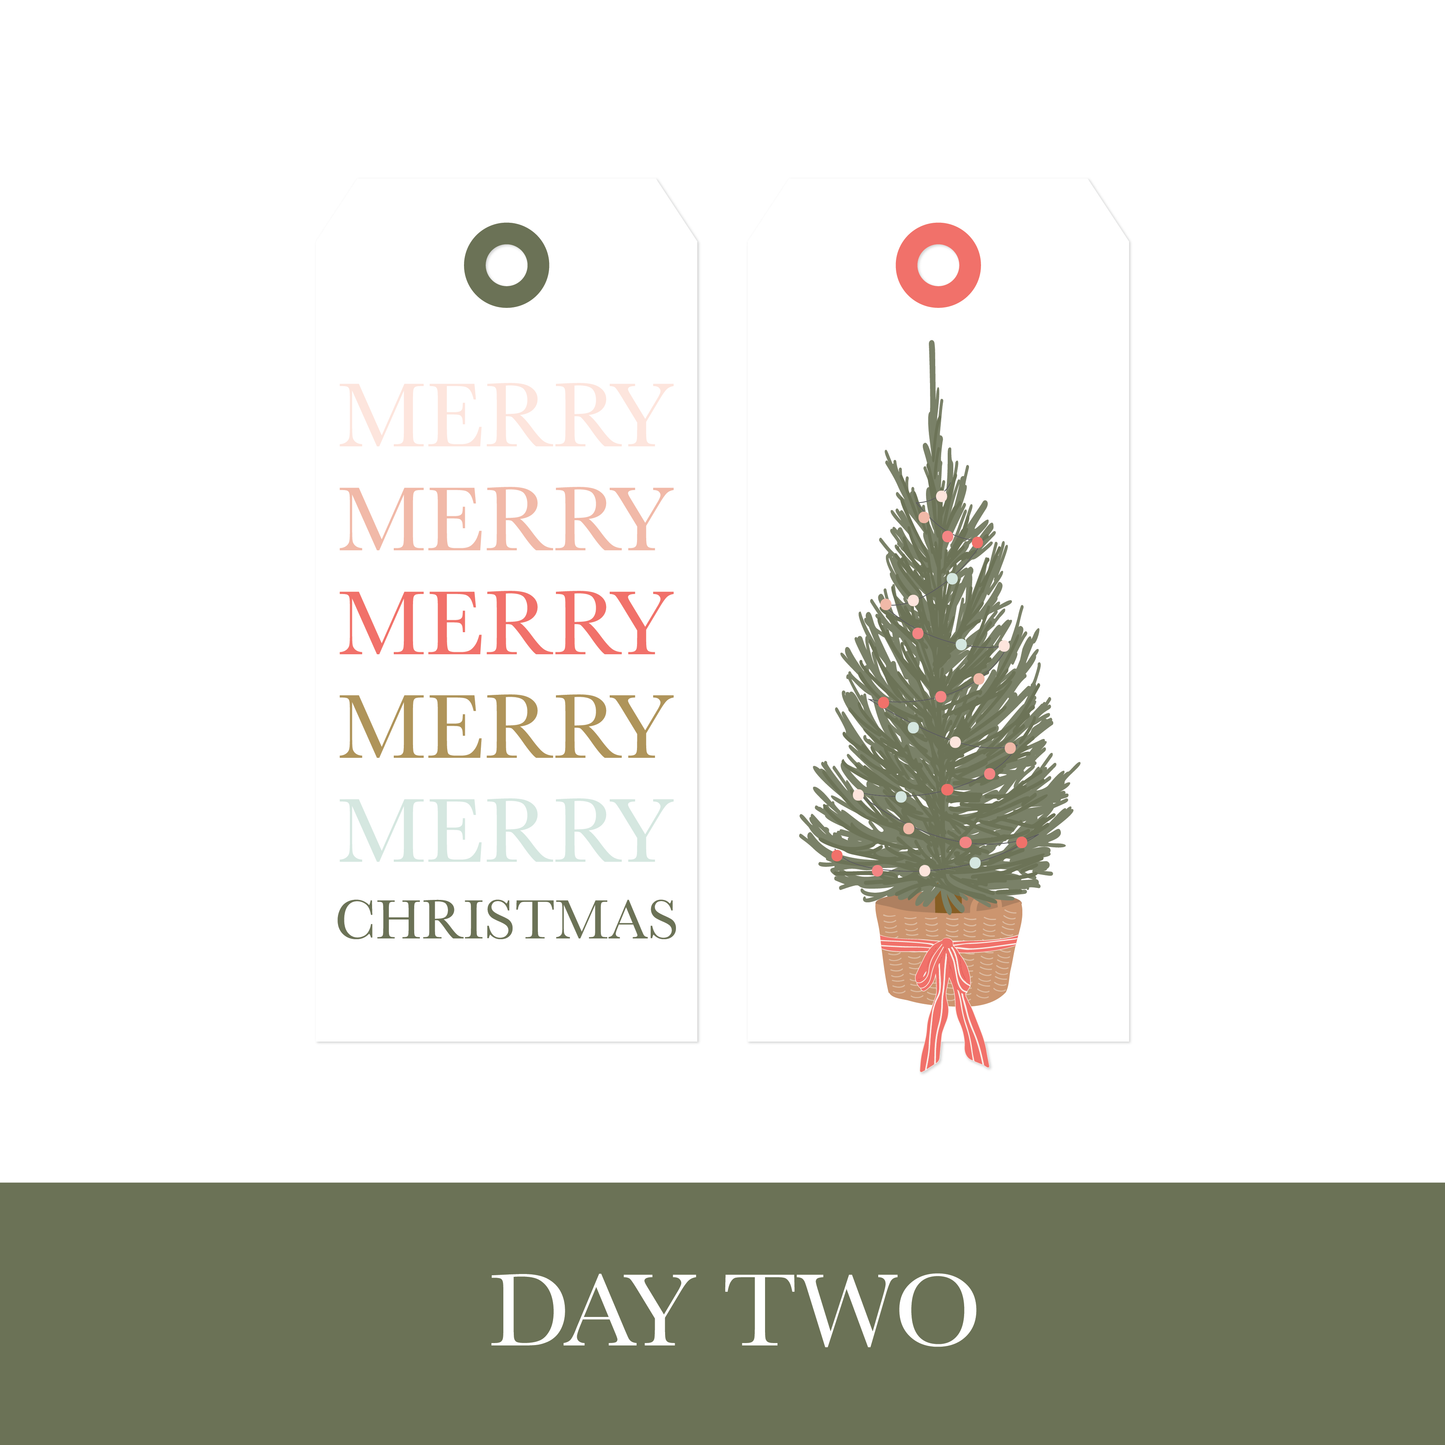 fj 12 days of Christmas printables - DAY TWO